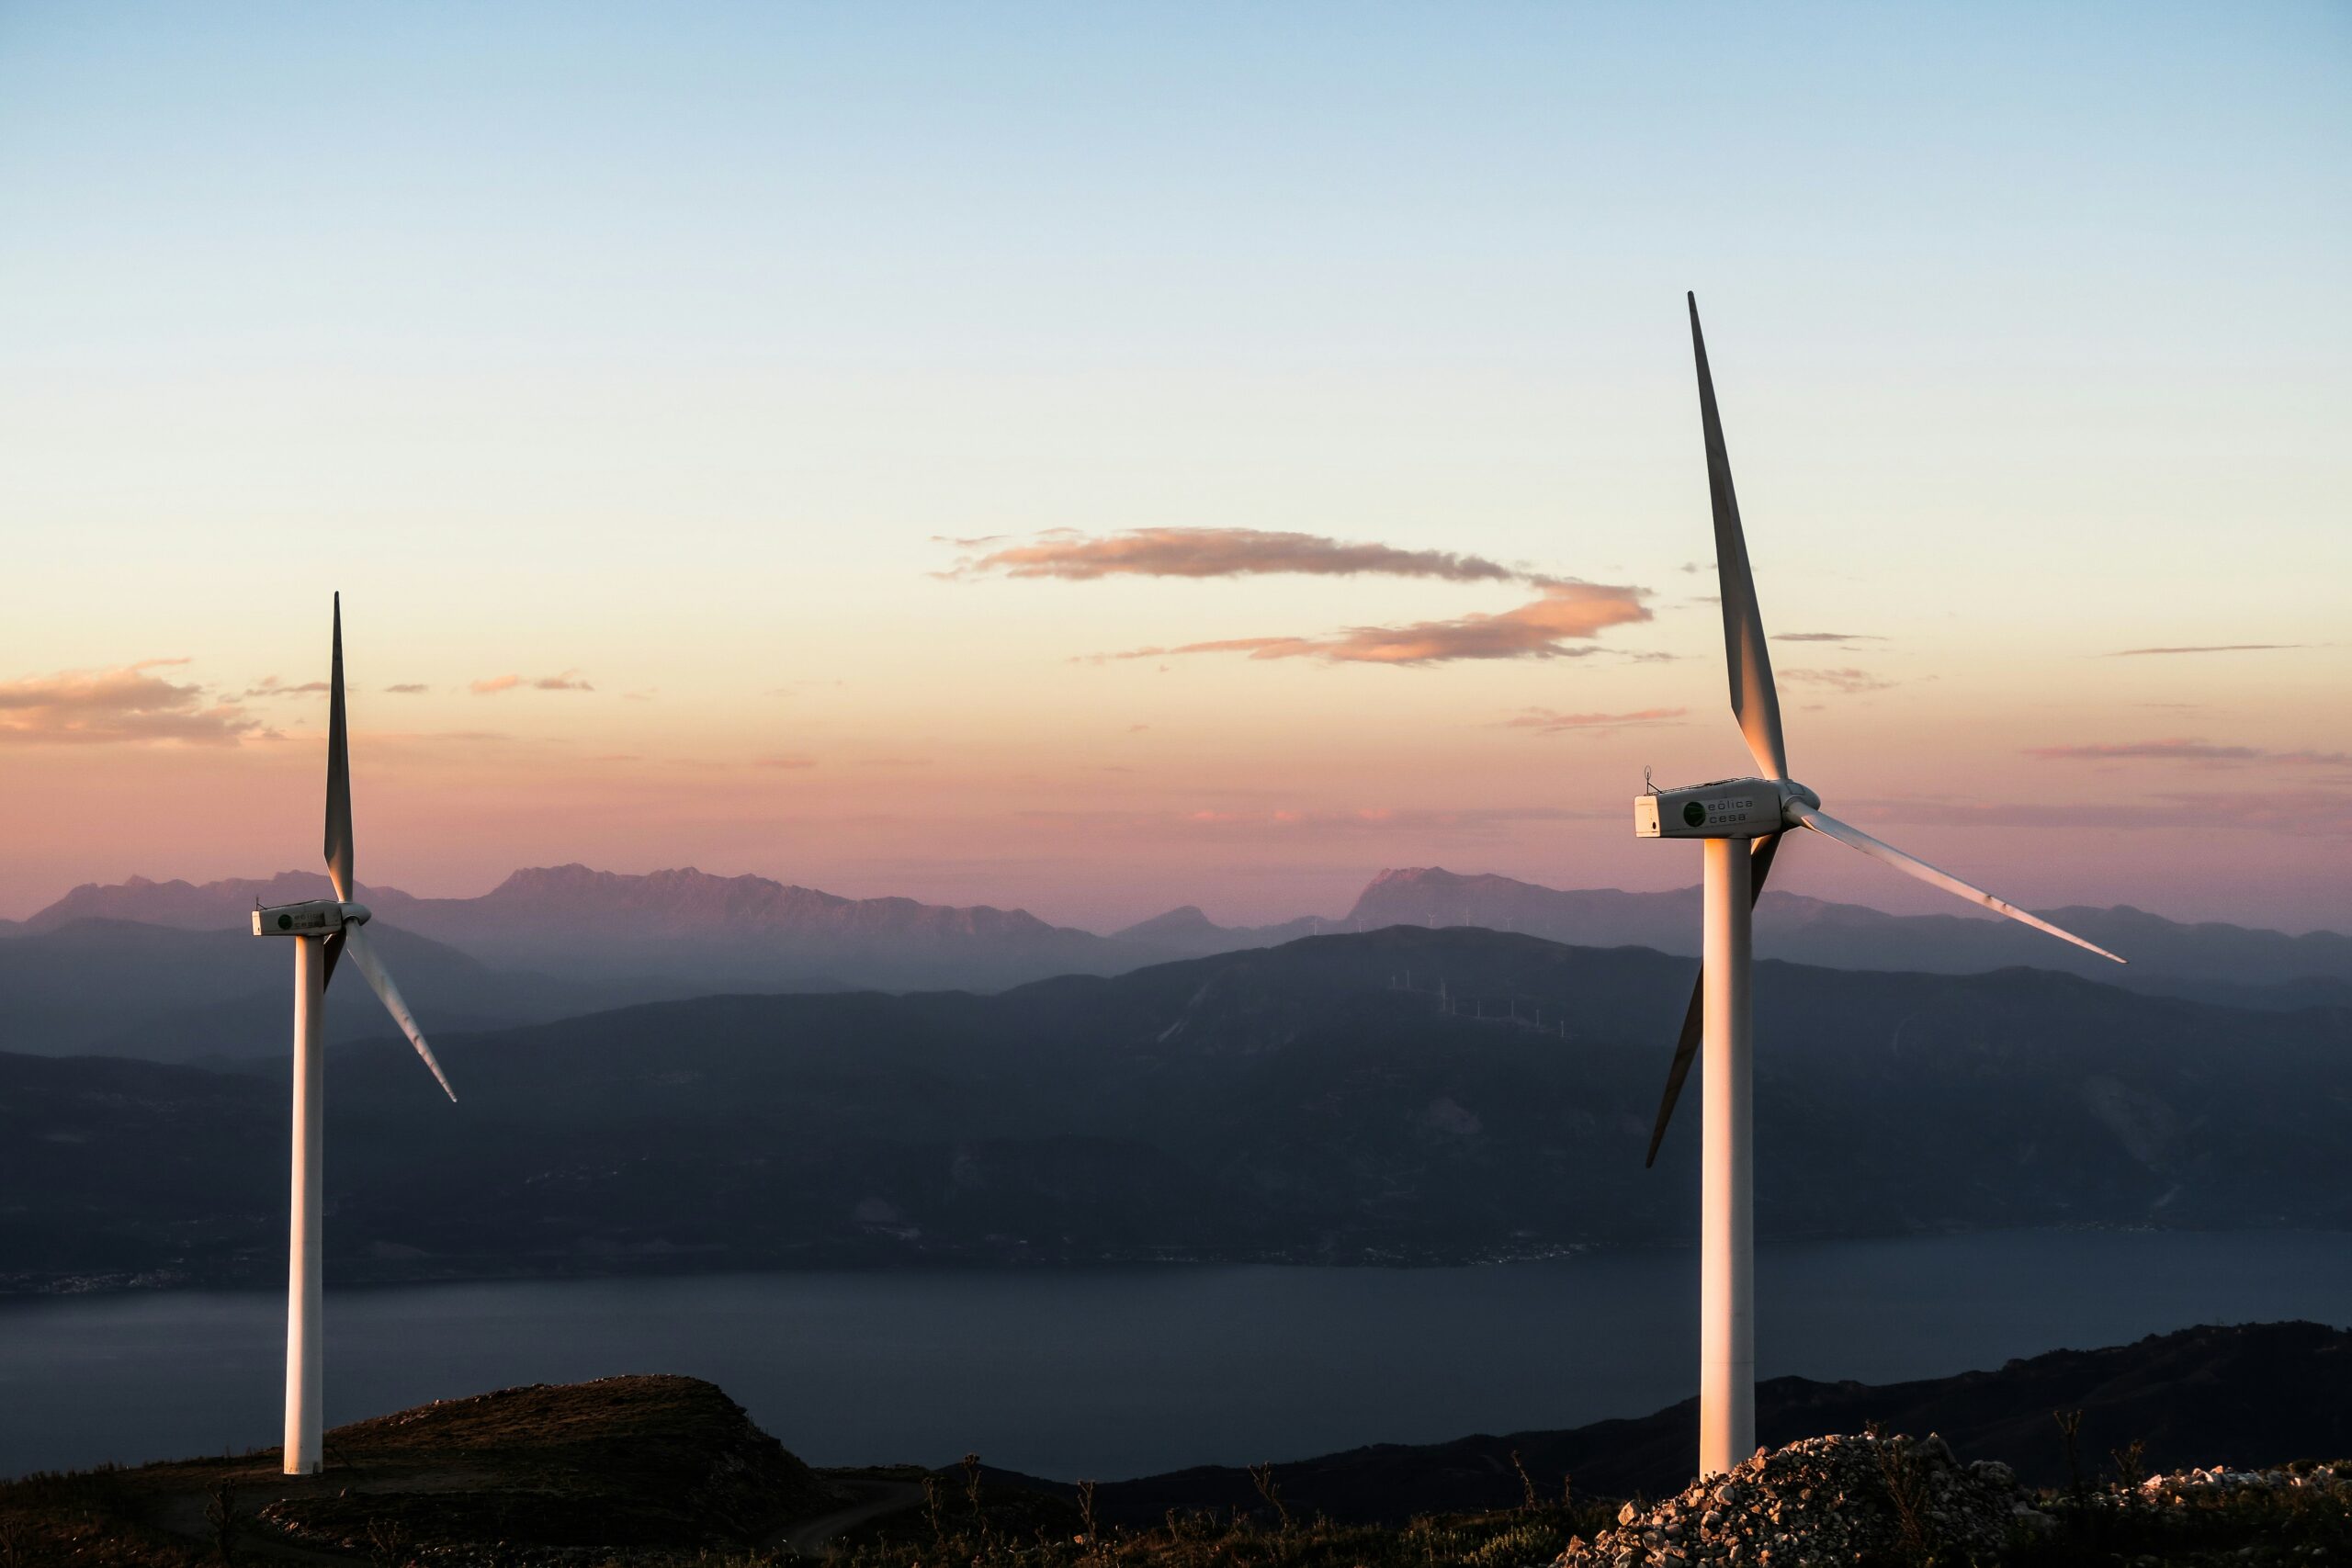 découvrez la puissance et la durabilité de l'énergie éolienne et son rôle dans la transition vers une économie plus durable.